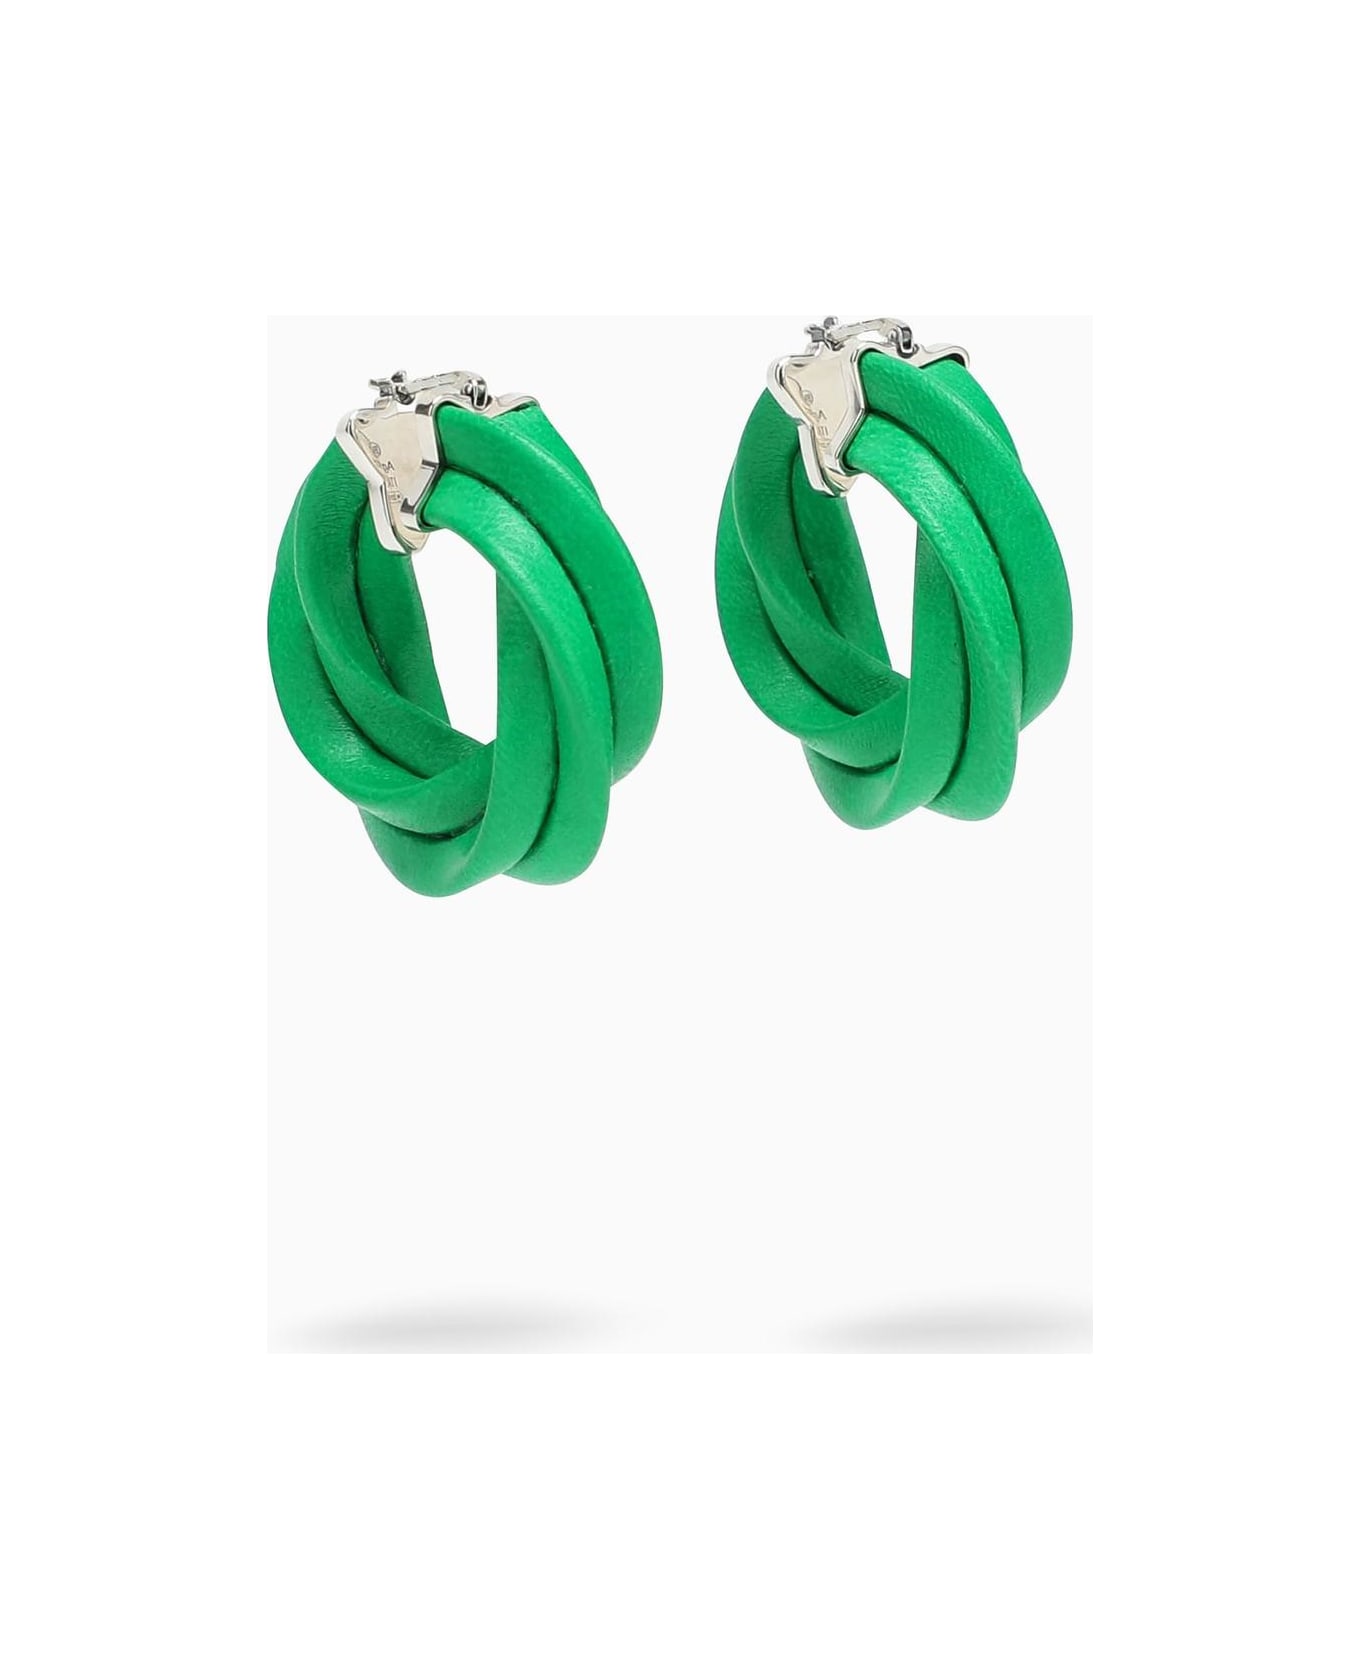 Bottega Veneta Green Twisted Hoop Earrings - Green イヤリング